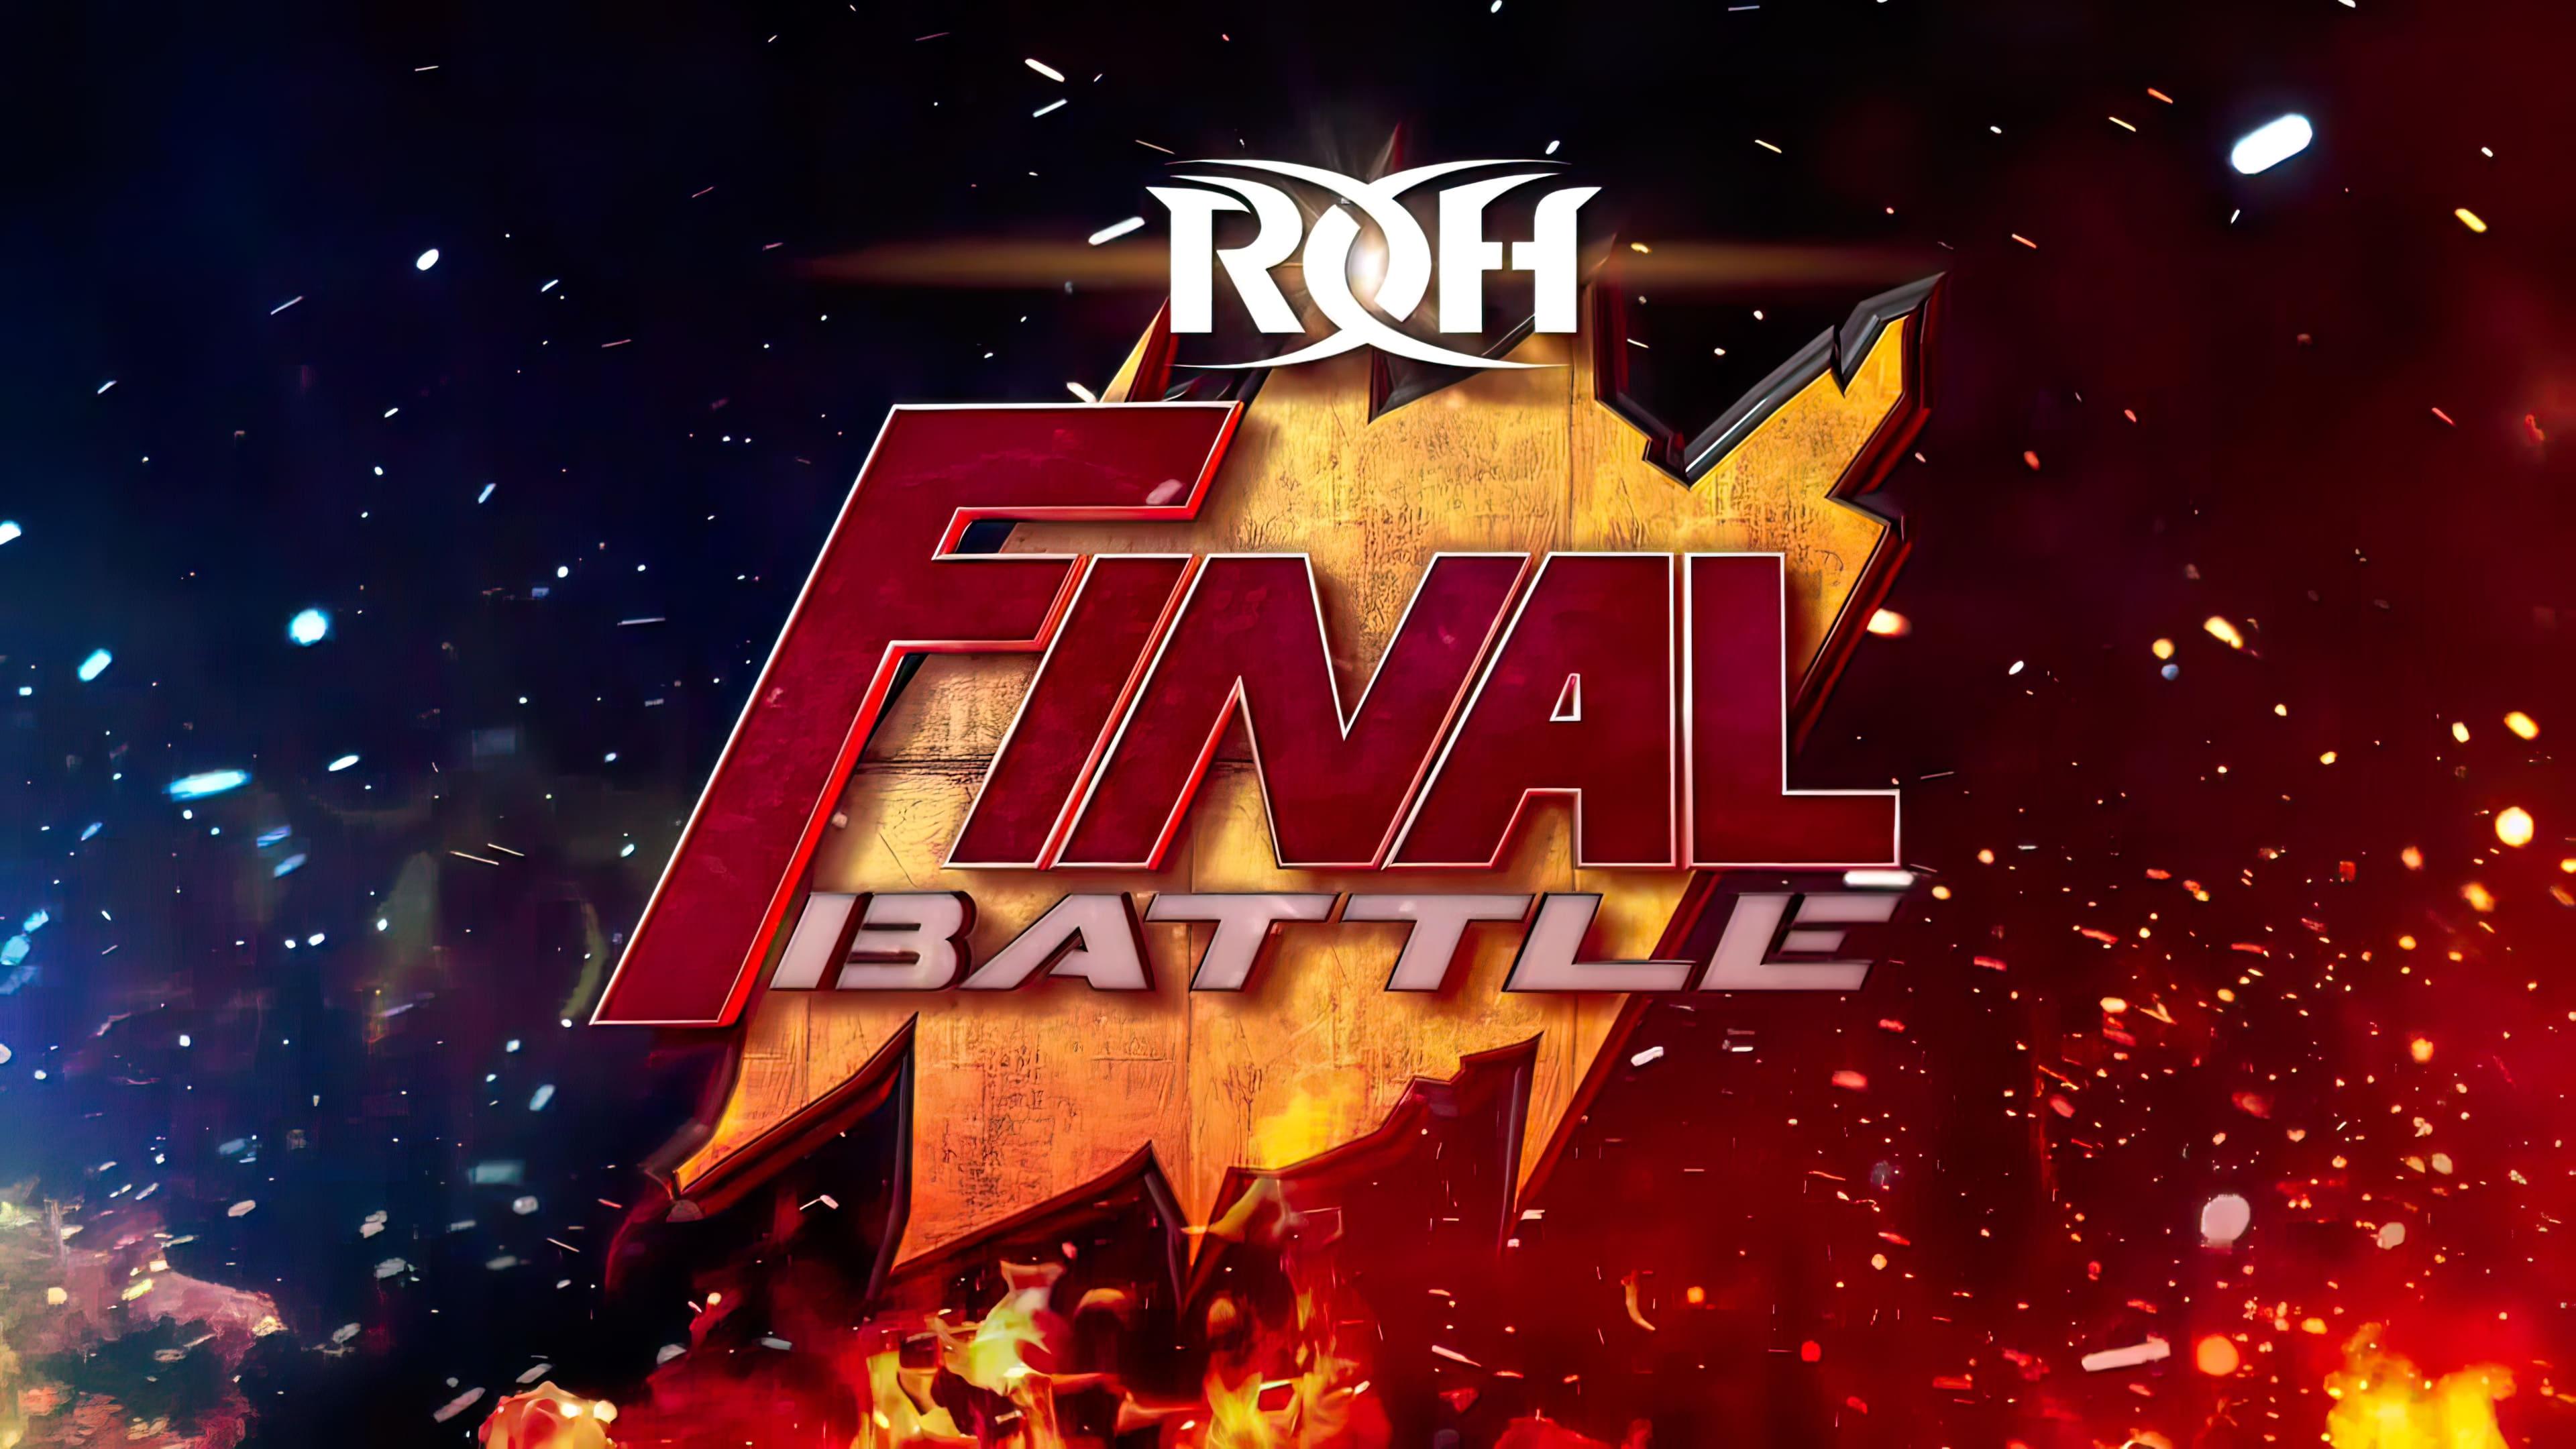 ROH: Final Battle backdrop